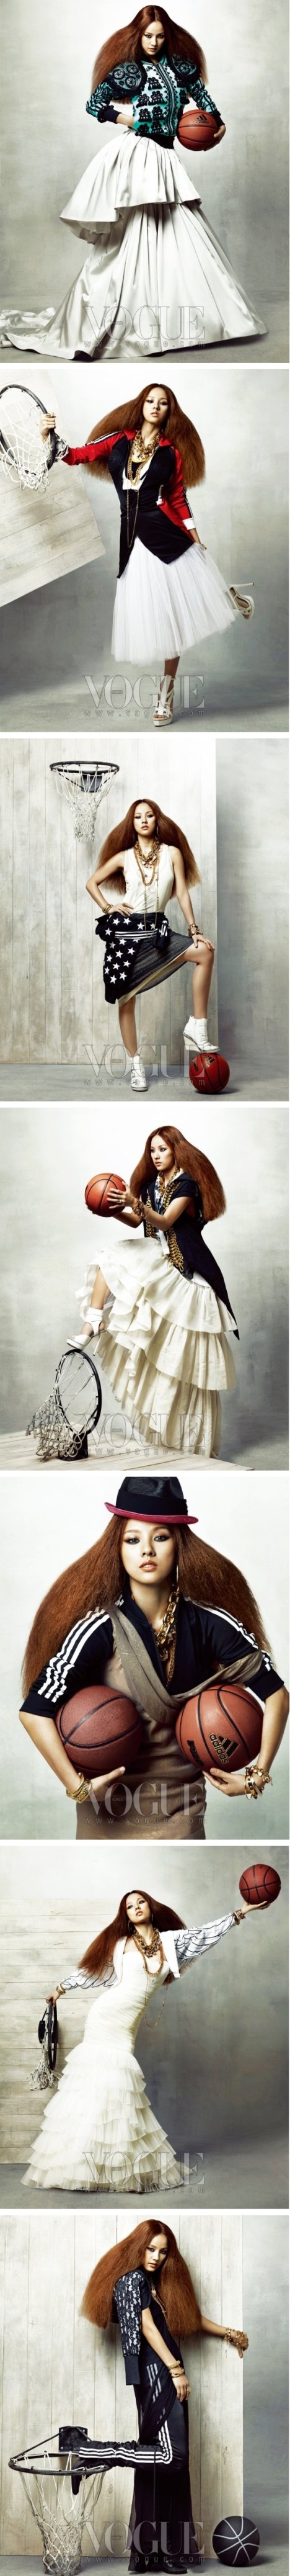 [Lee Hyori] Photos pour Vogue Magazine Lhr4